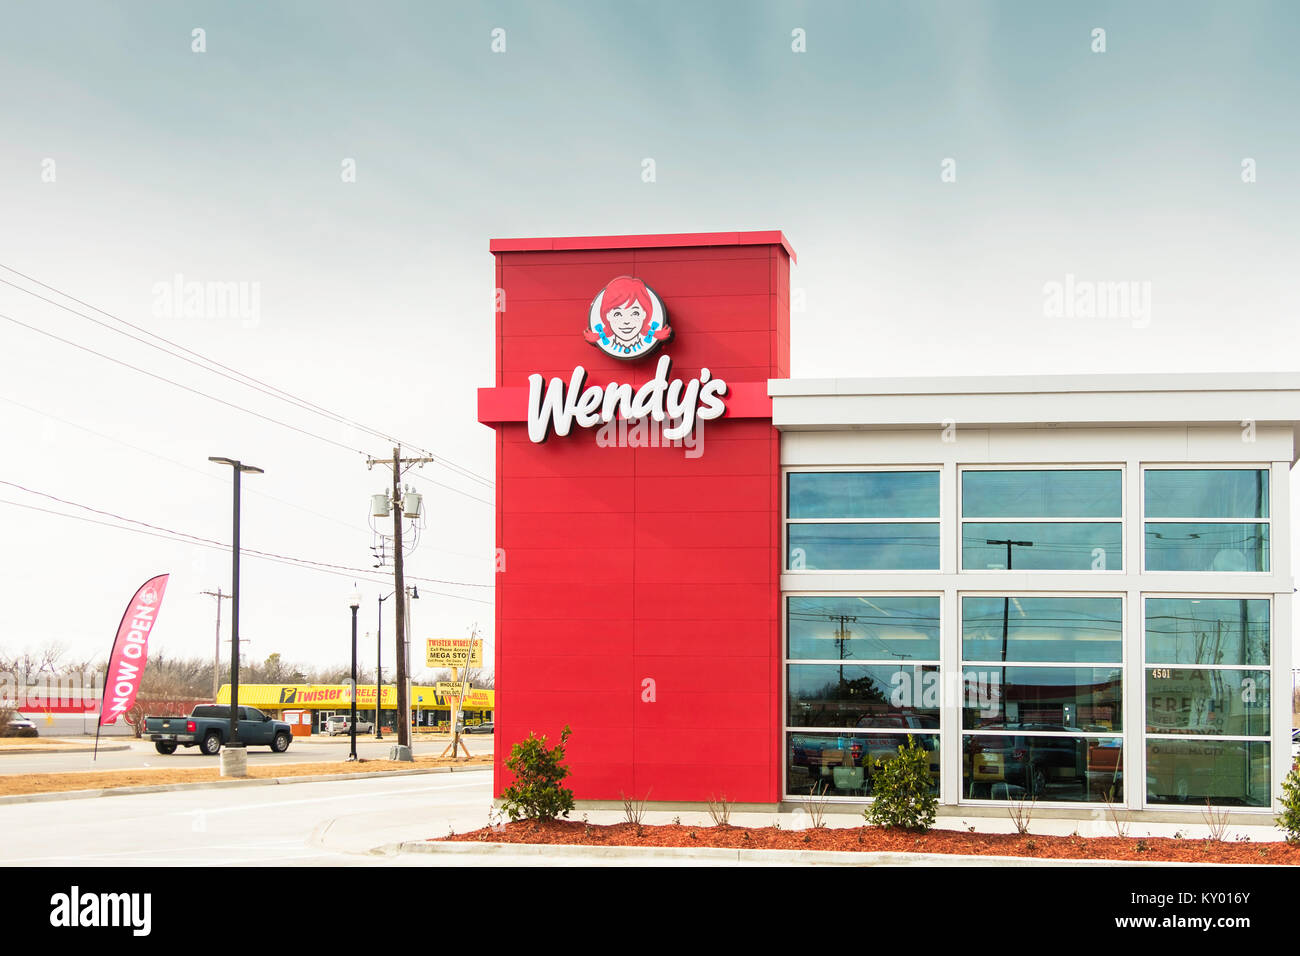 Le côté et le logo, signe de Wendy's restaurant, une nouvelle ouverture à Oklahoma City, Oklahoma, USA. Banque D'Images